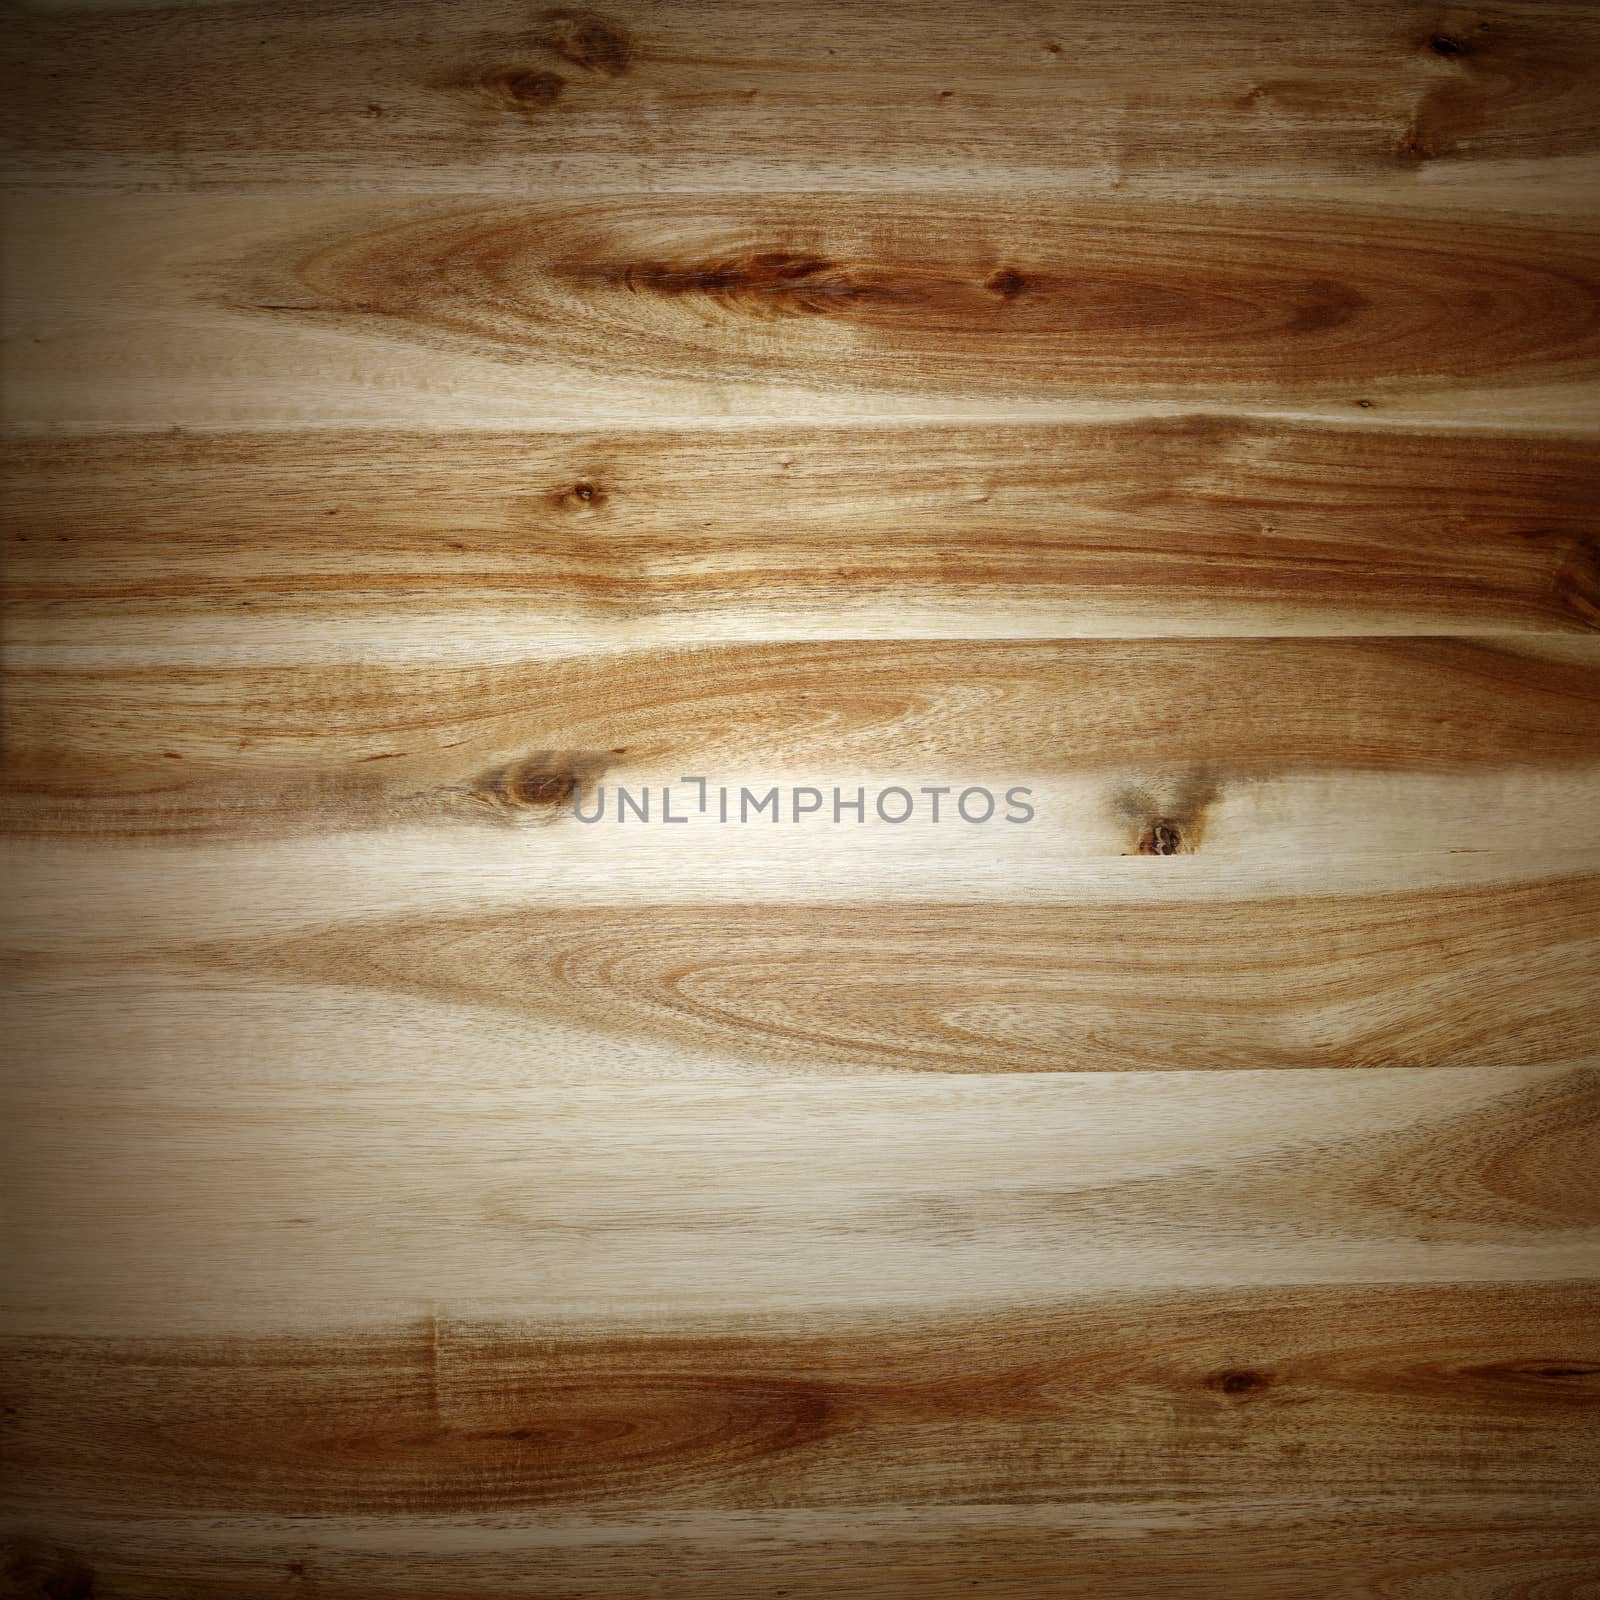 Wooden planks by Stillfx